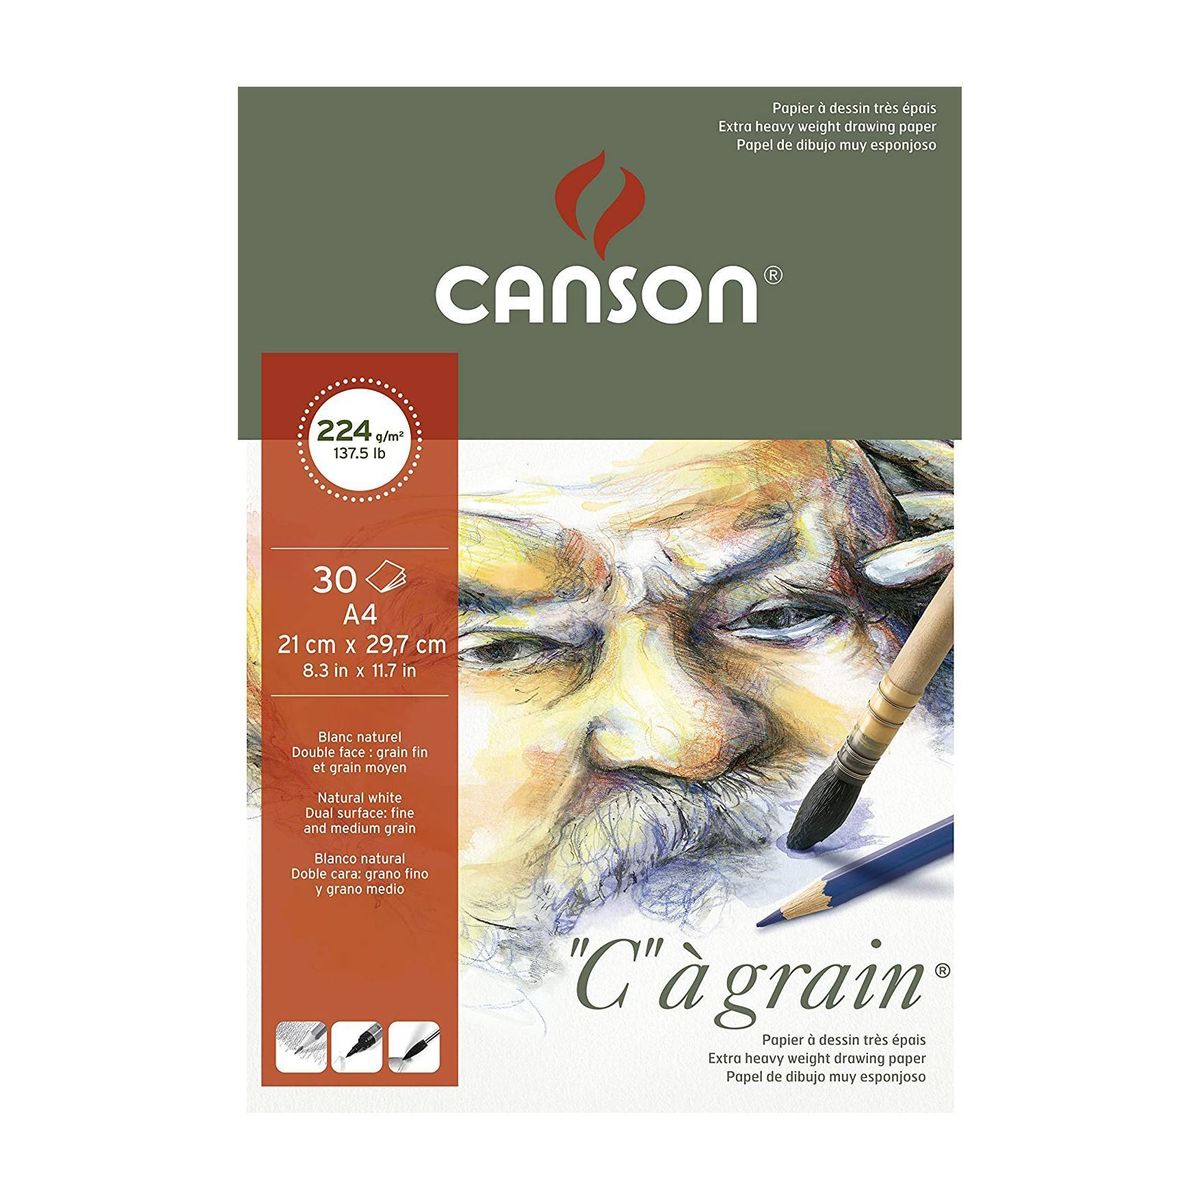 Bloco Canson “c” à Grain A4 224g/m² 30 Folhas 
